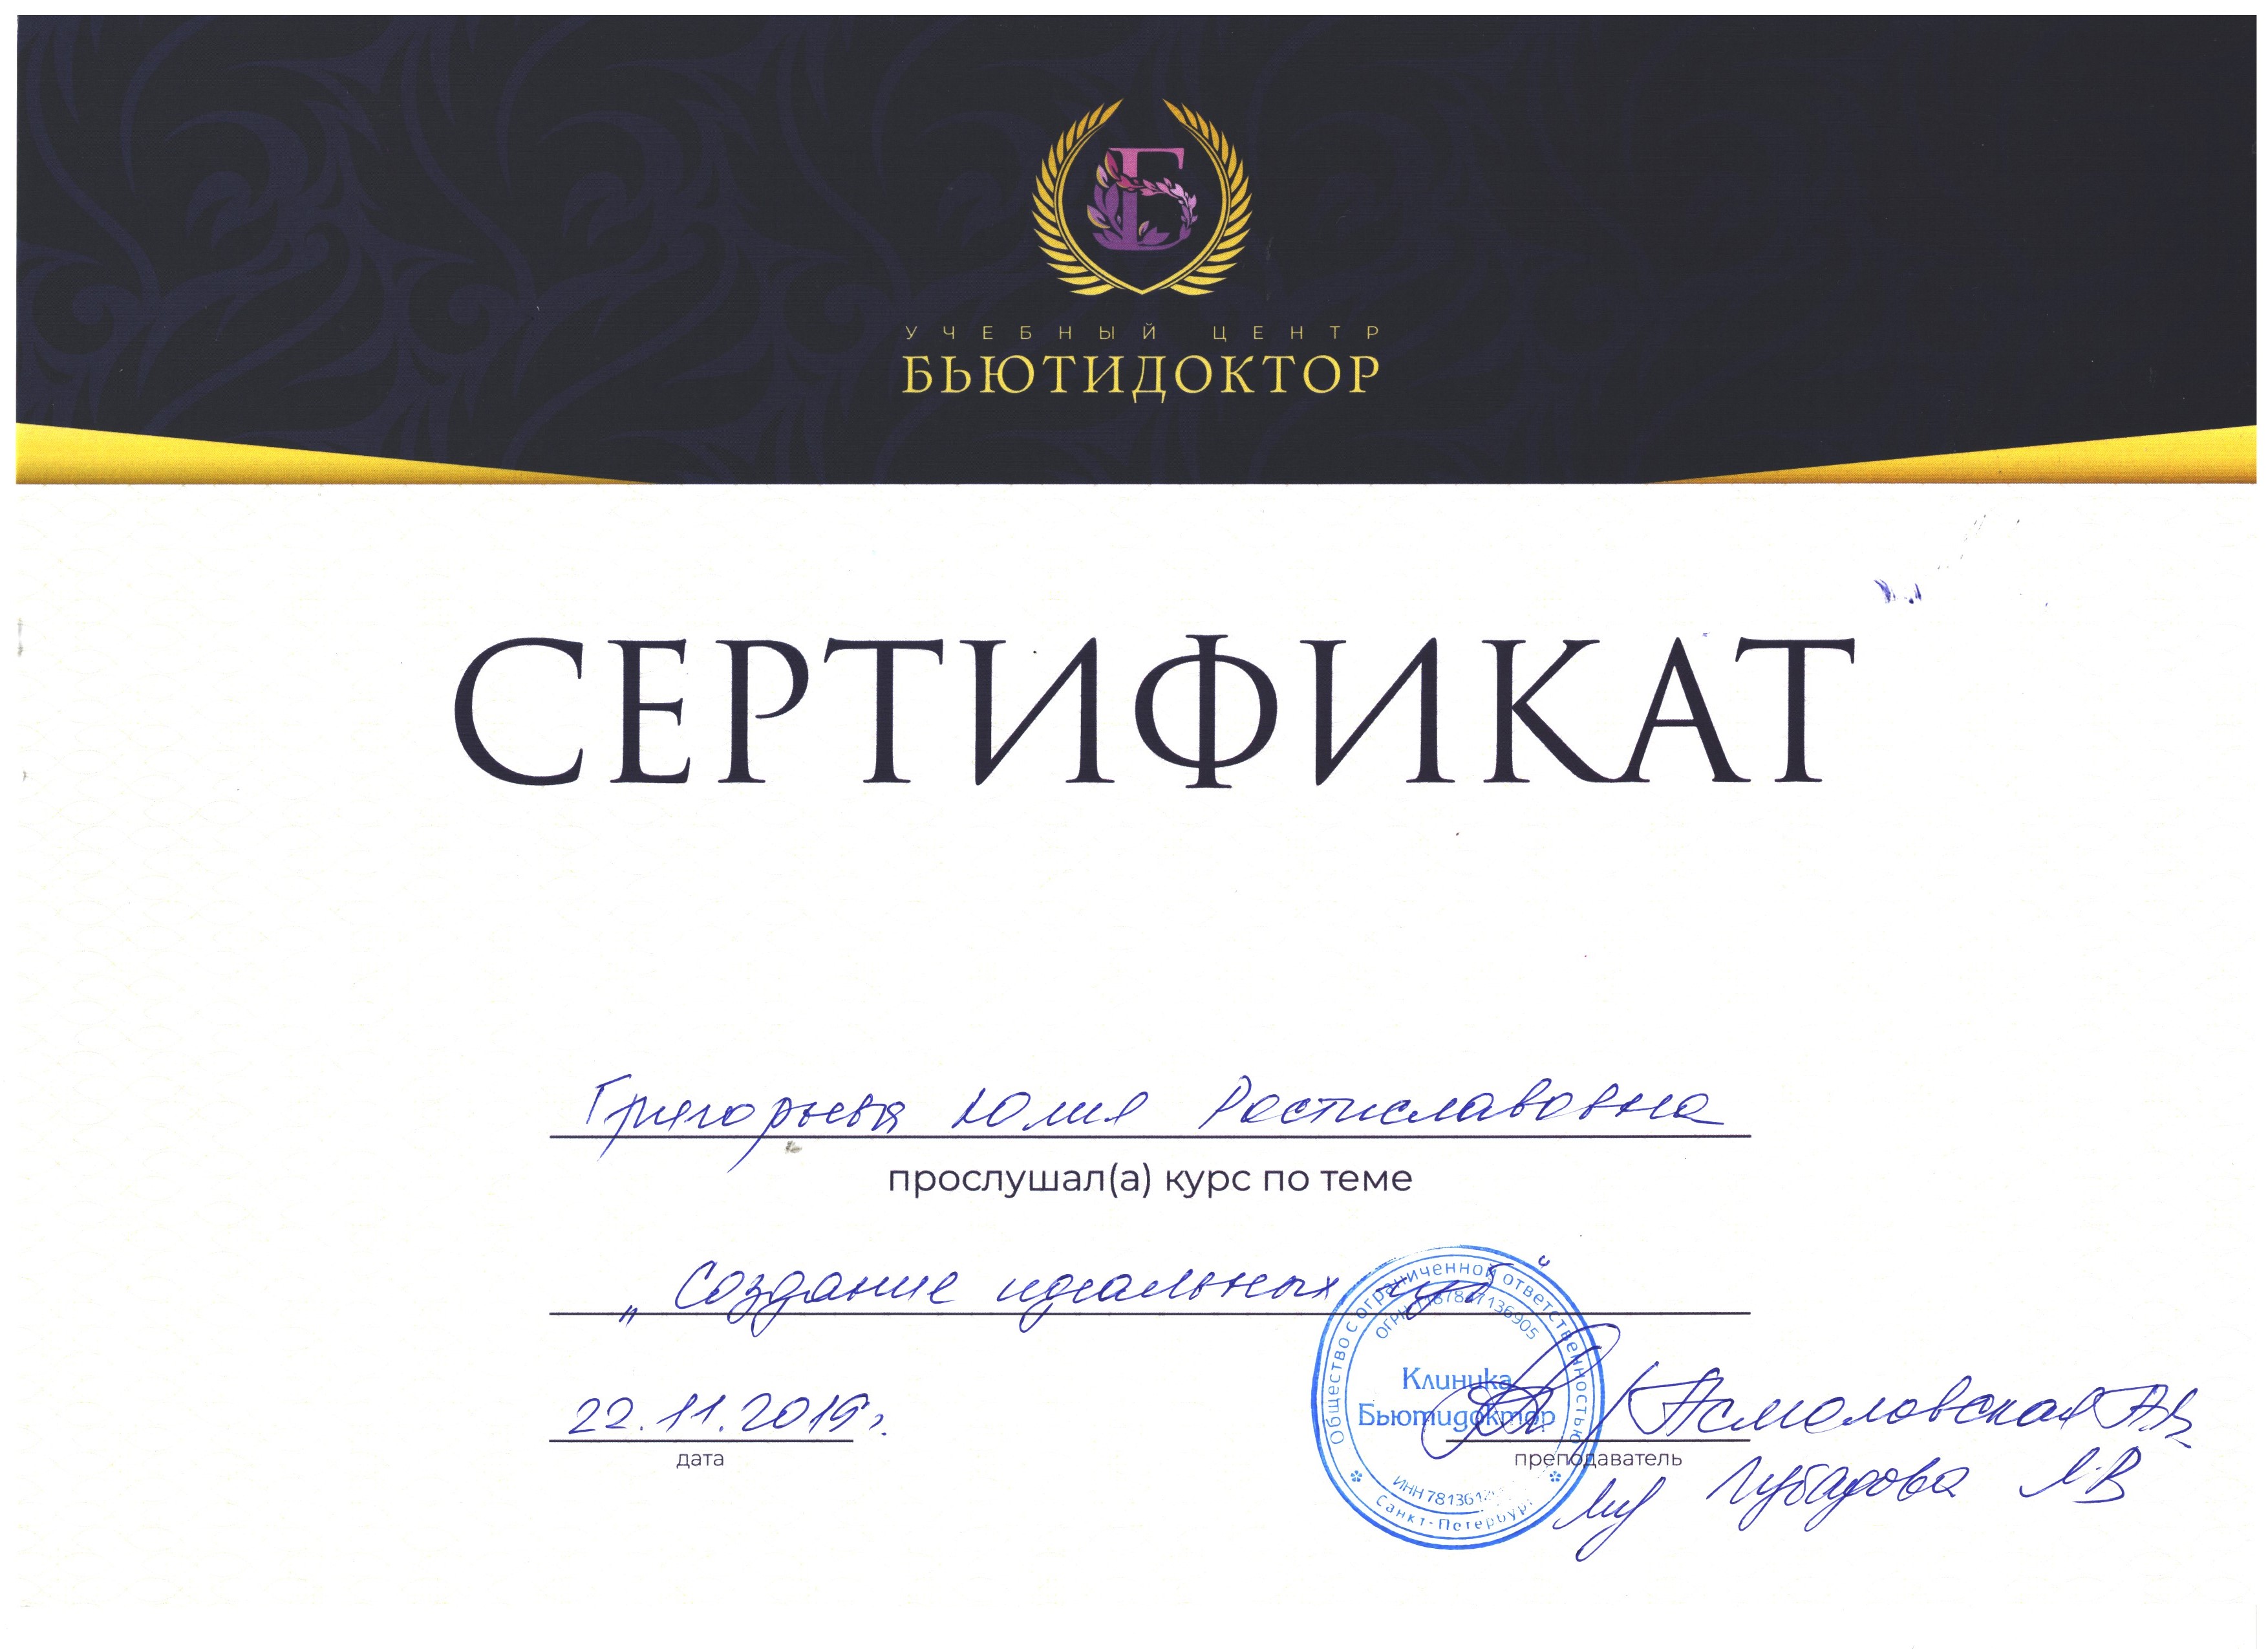 Сертификат — Создание идеальных губ. Григорьева Юлия Ростиславовна